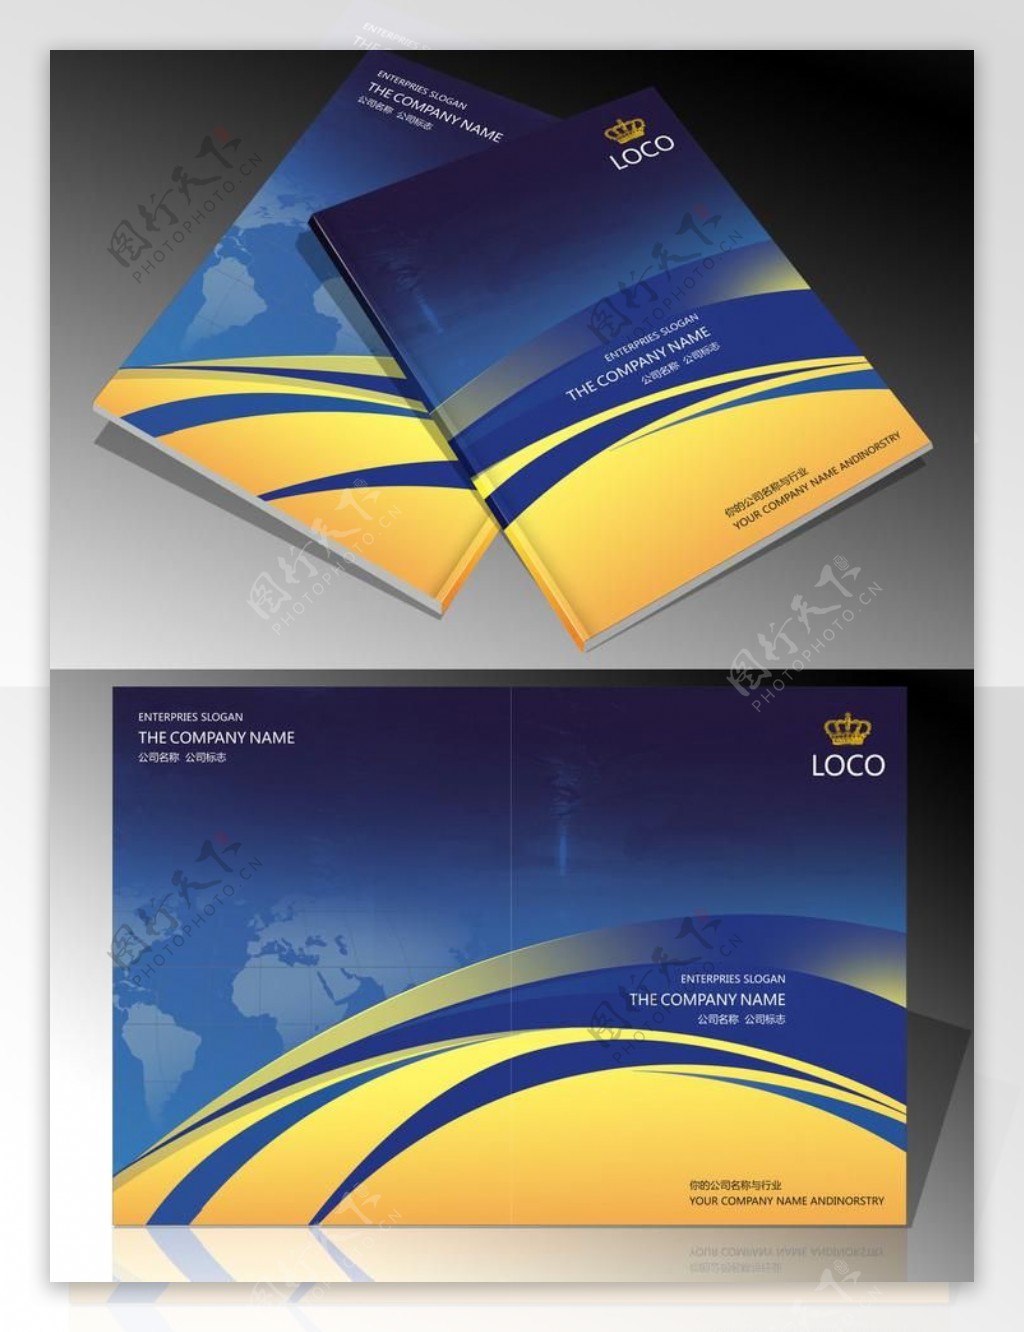 蓝色科技画册封面设计模板图片